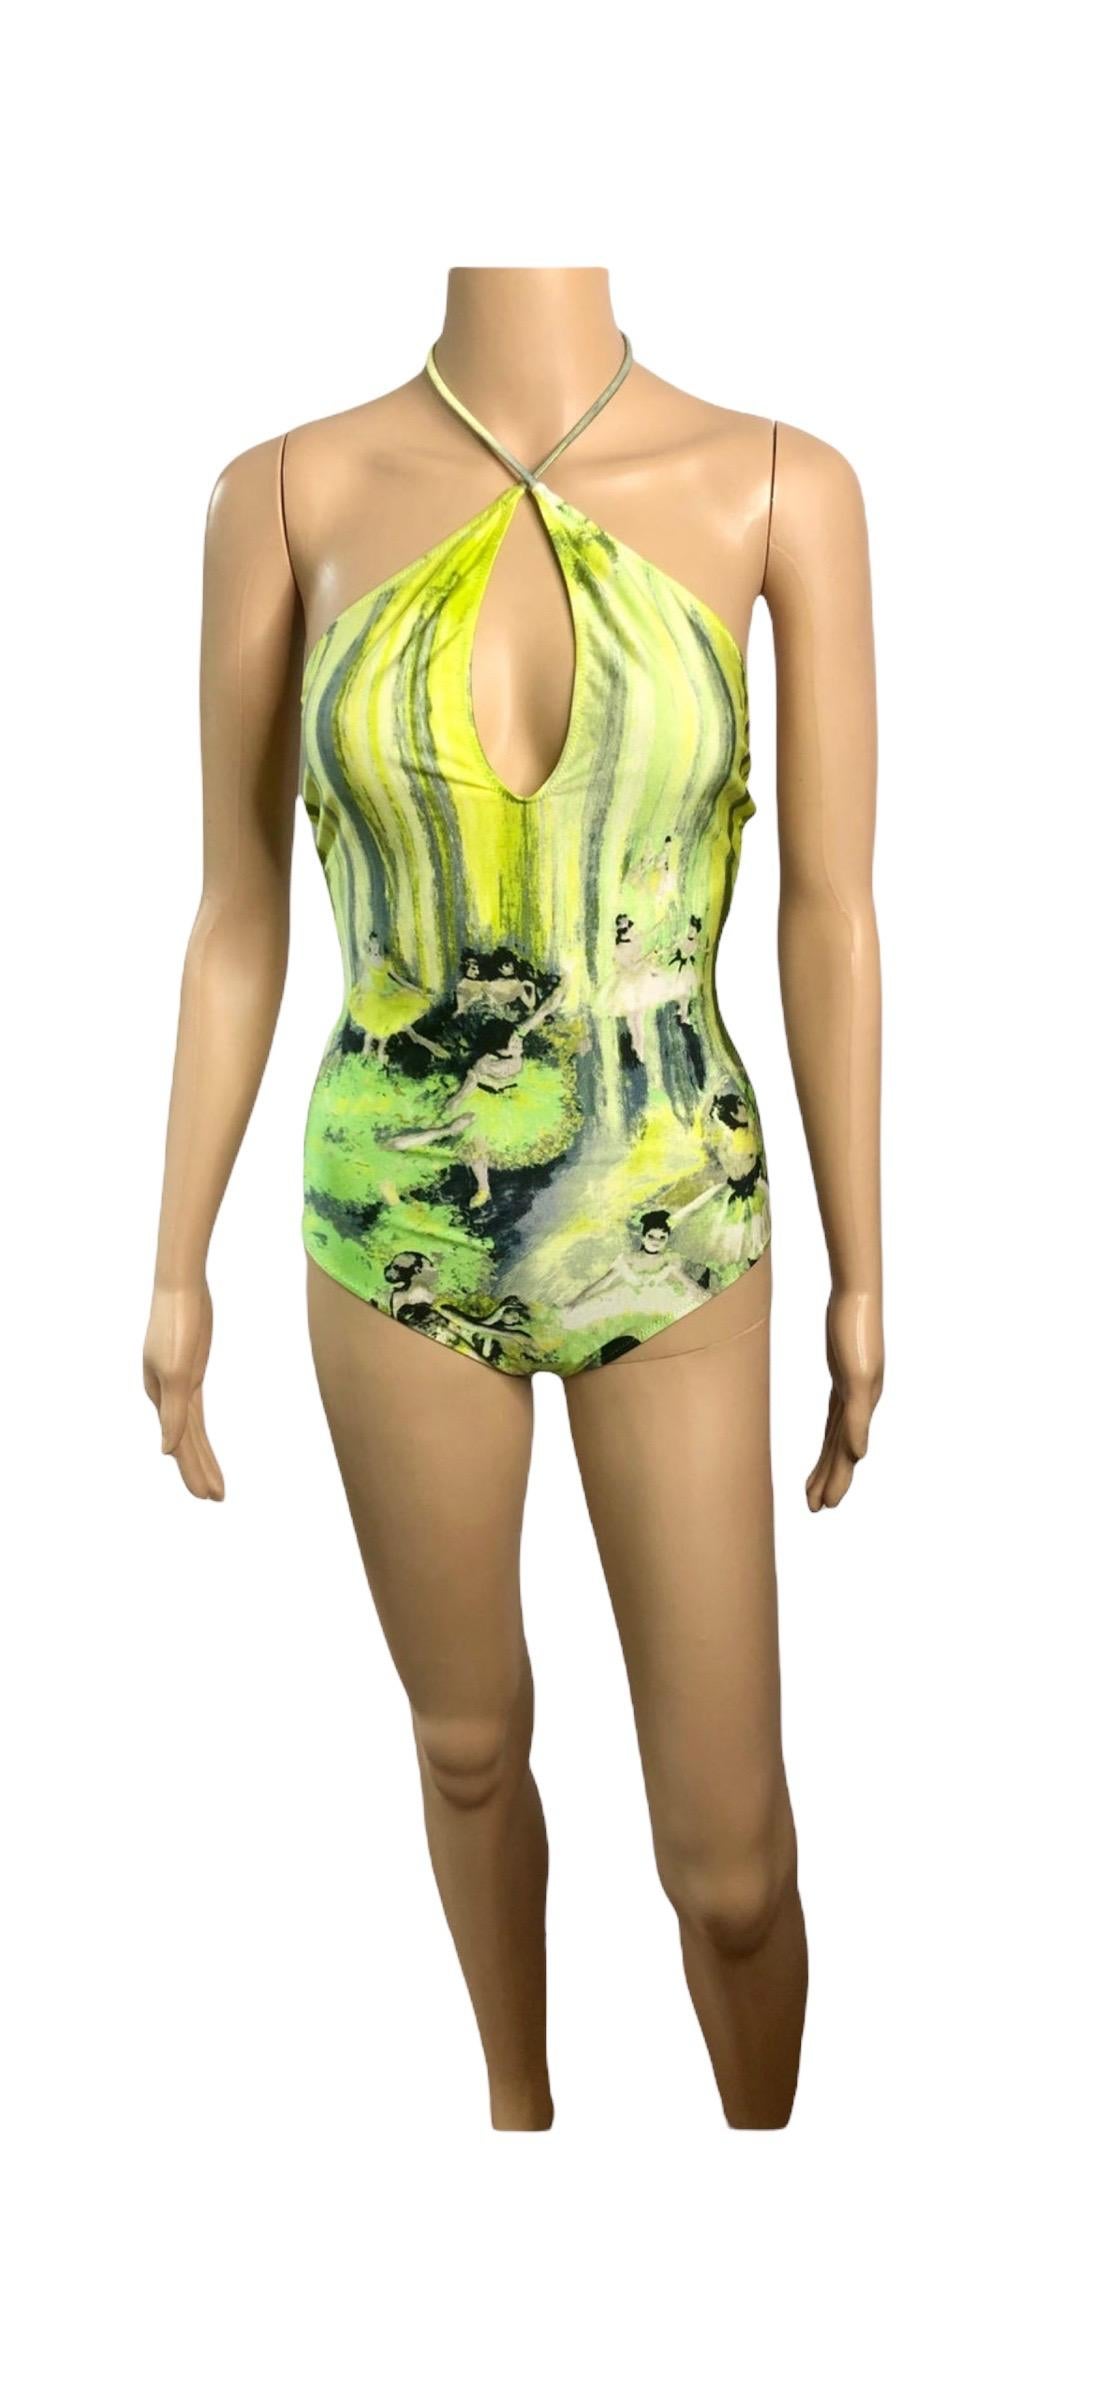 Jean Paul Gaultier Soleil S/S 2004 Degas Ballet Bodysuit Swimwear Swimsuit For Sale 5